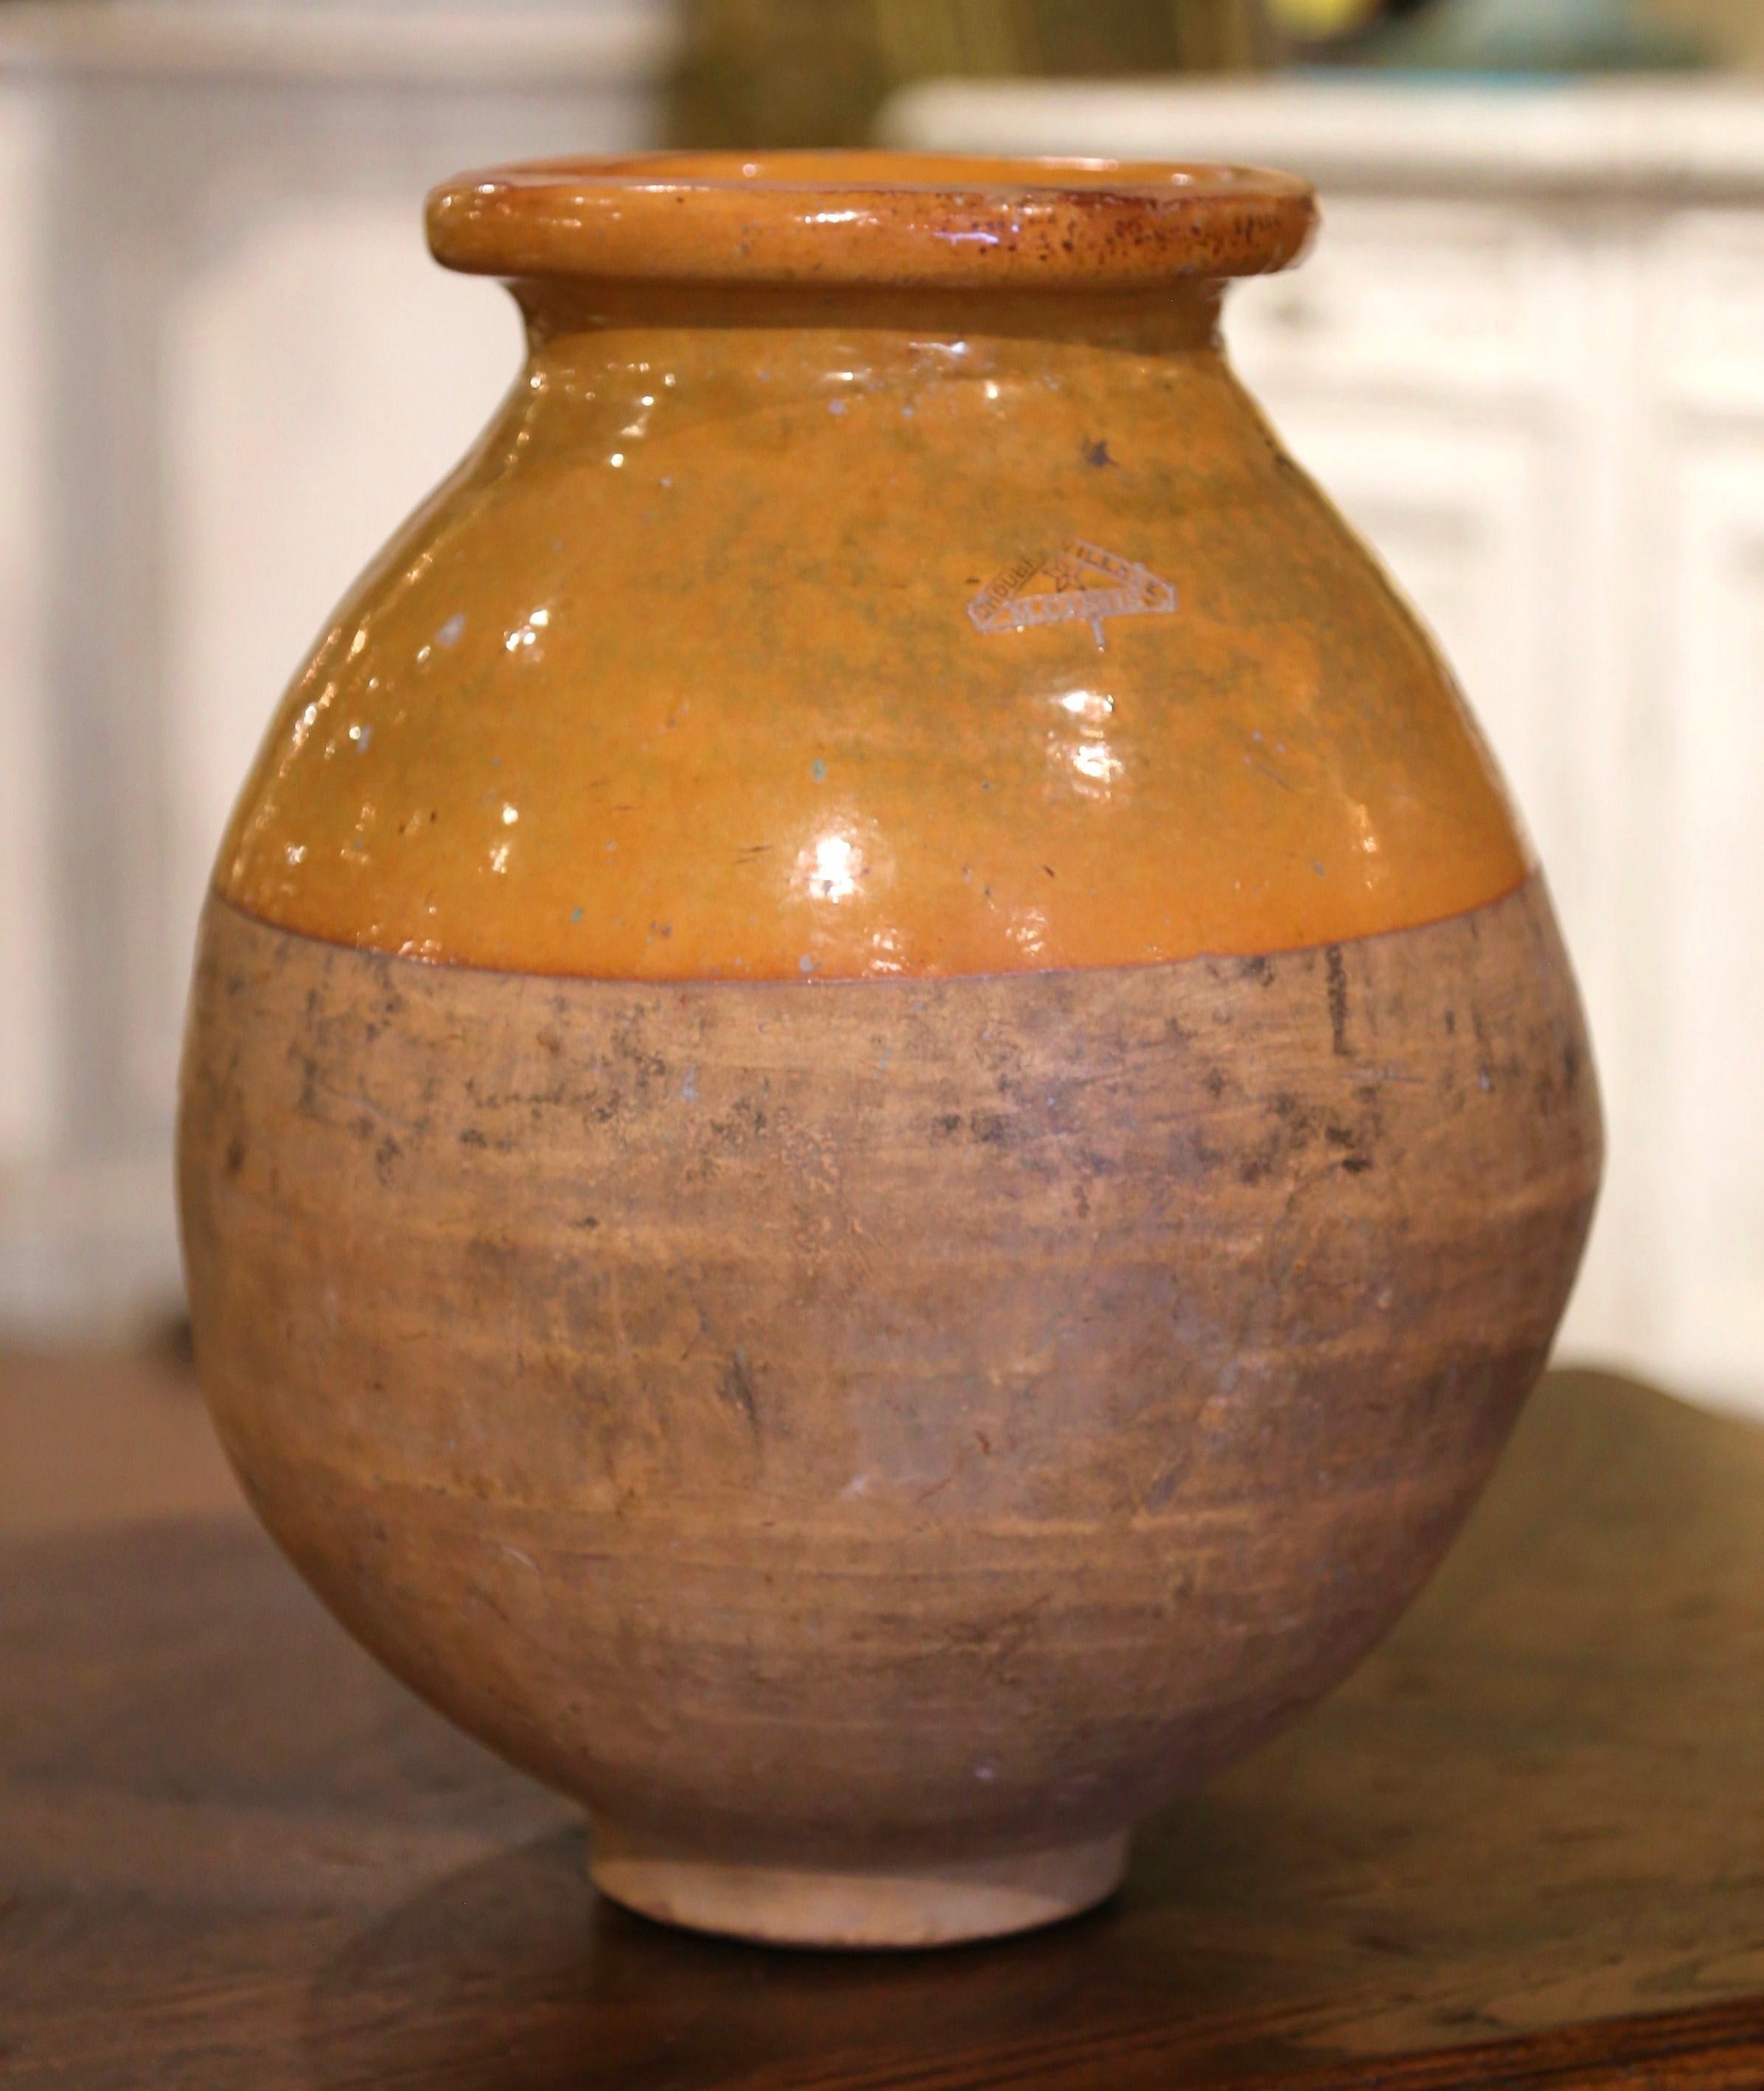 Cette ancienne jarre à huile d'olive en faïence a été créée dans le sud de la France, vers 1880. Fabriqué en argile blonde et de couleur neutre, le vase en terre cuite a une forme ronde traditionnelle. Ce pot rustique et usé par le temps présente